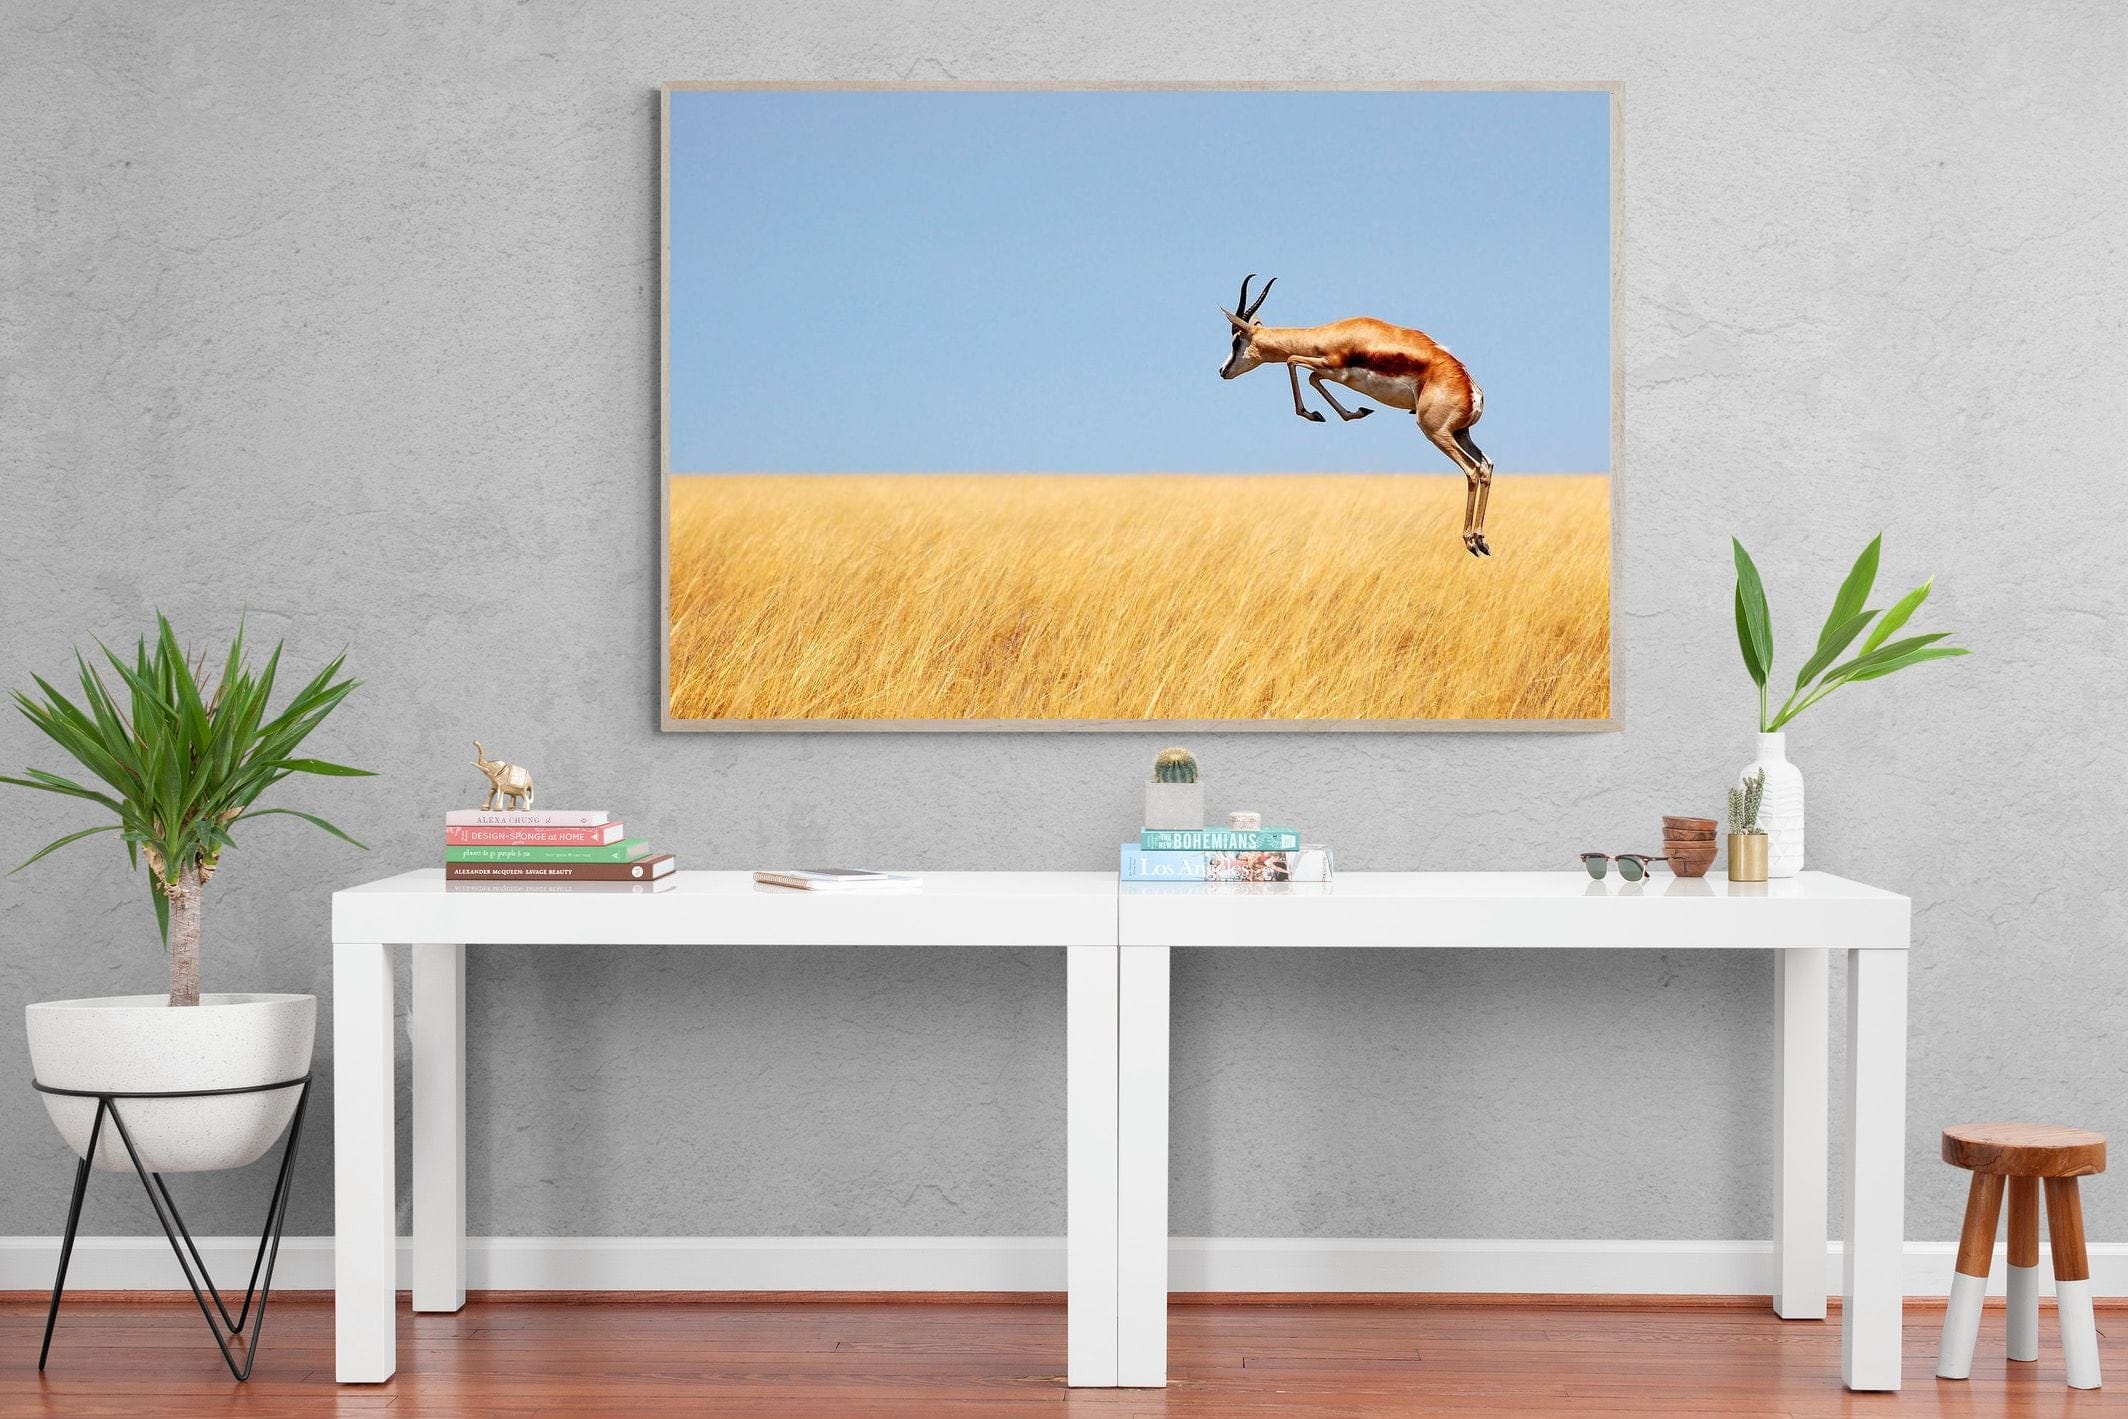 Springy-Wall_Art-150 x 100cm-Mounted Canvas-Wood-Pixalot